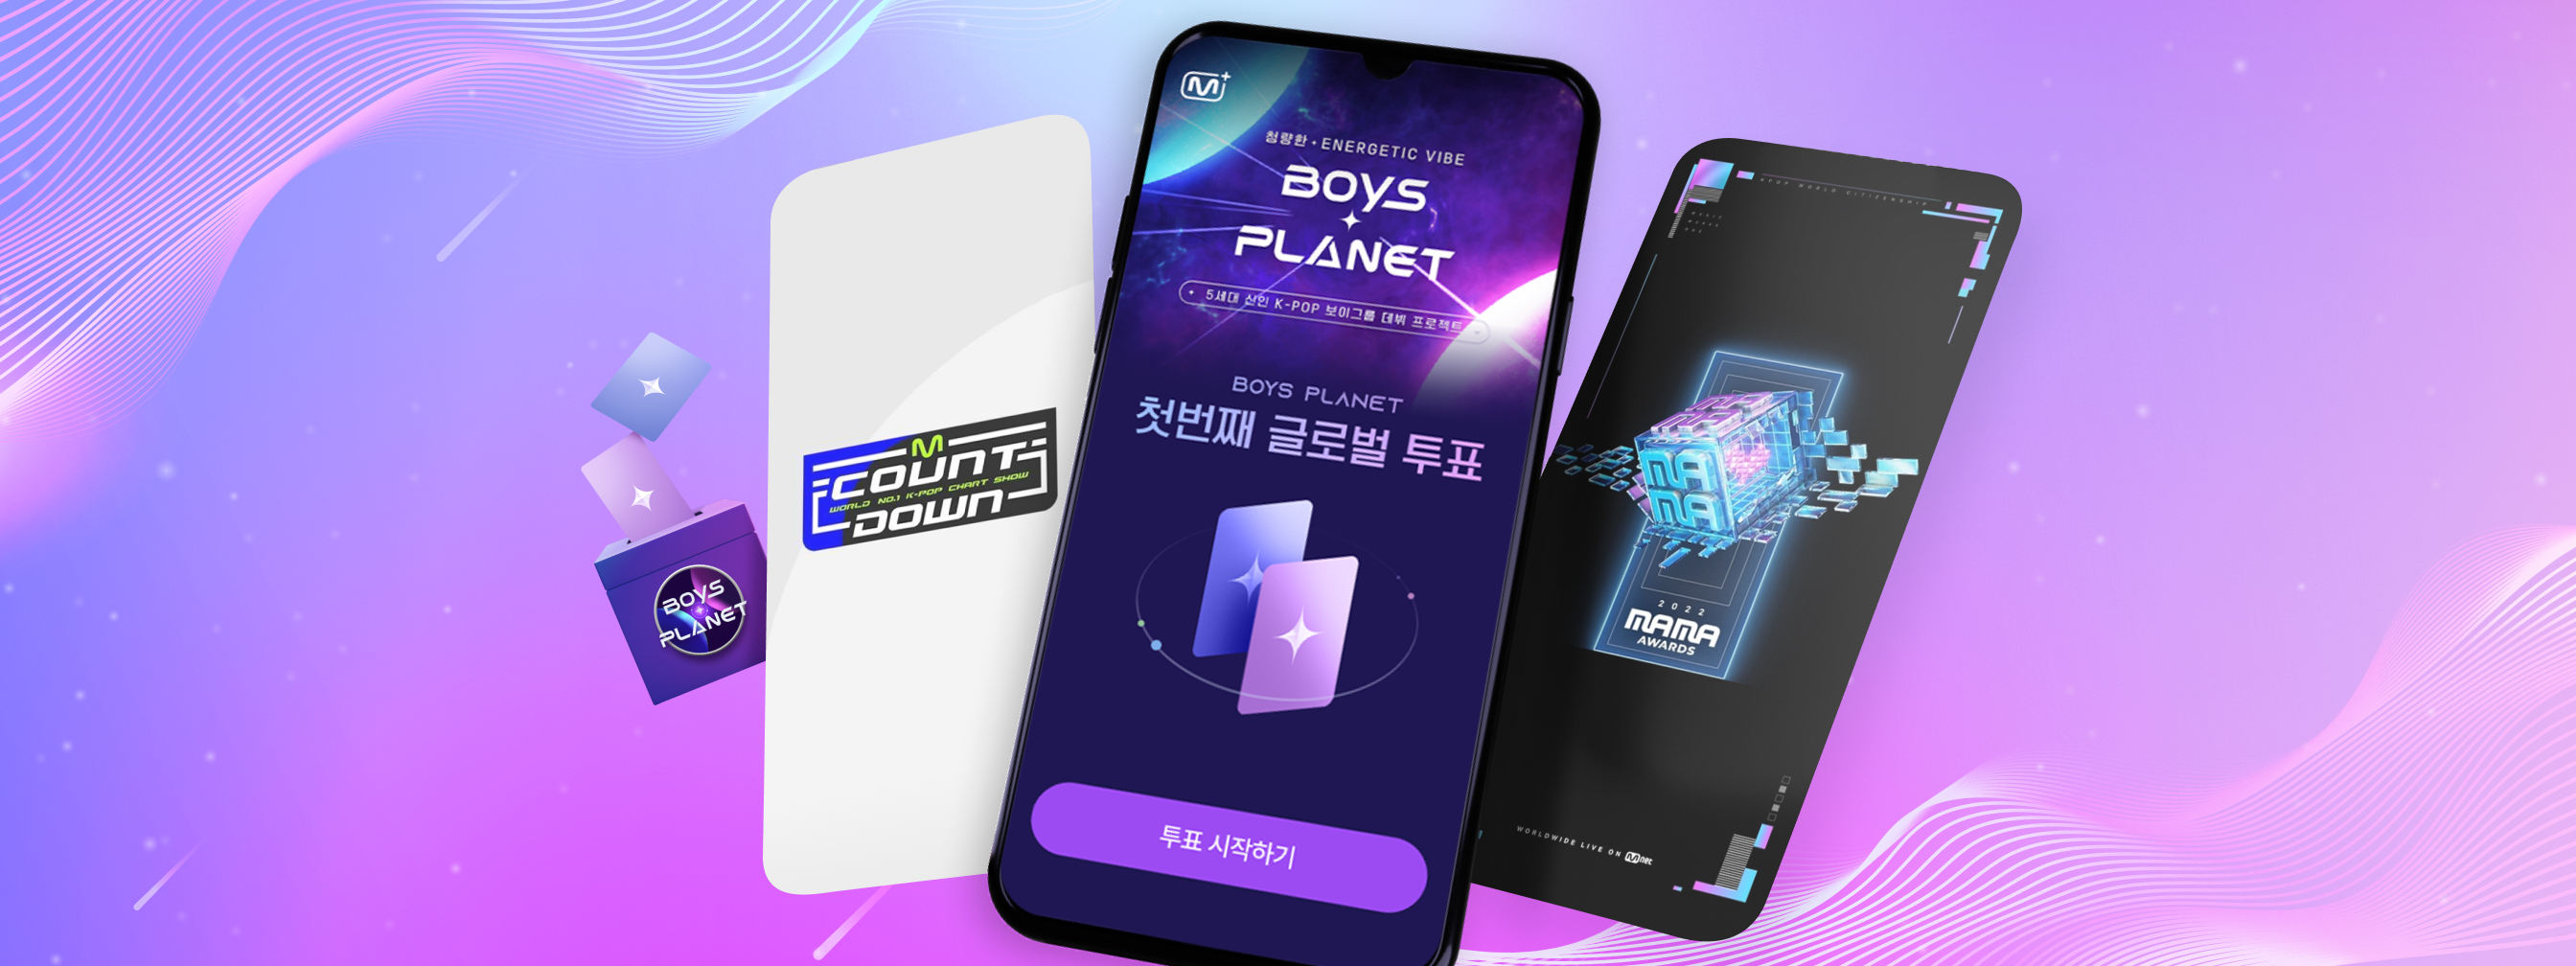 Engaging Platform for K-POP Fans